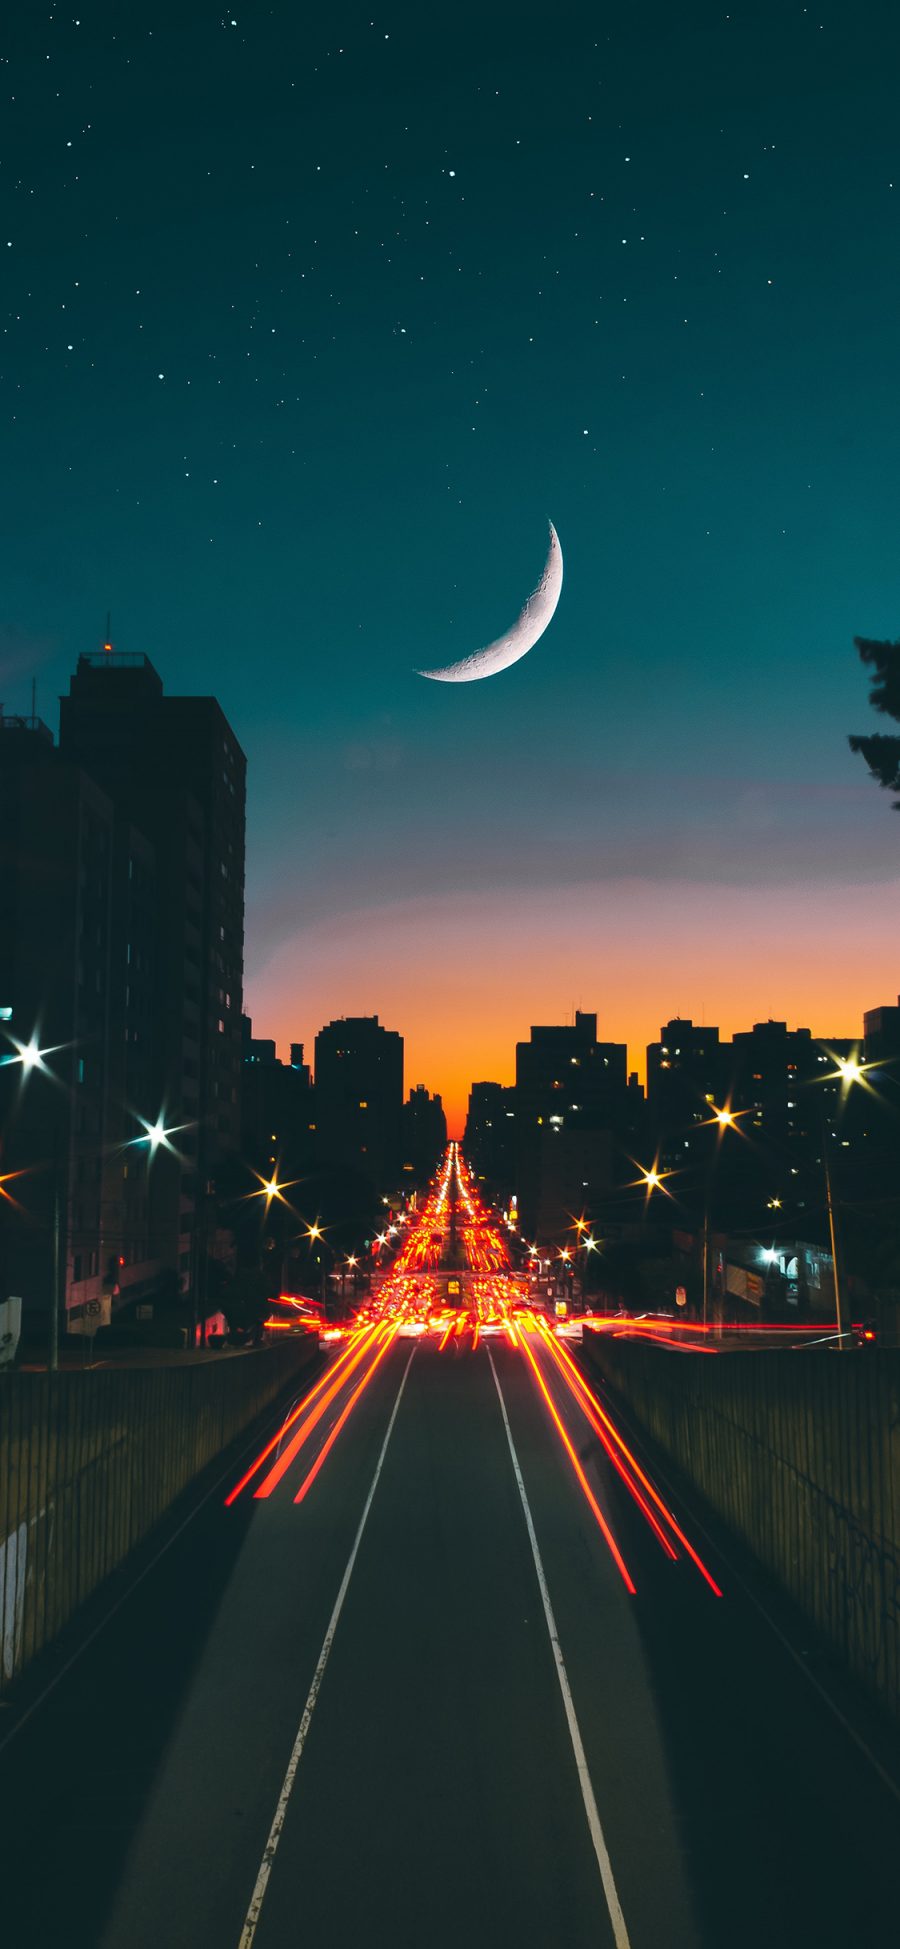 [2436×1125]夜晚 月亮 城市 道路 苹果手机壁纸图片